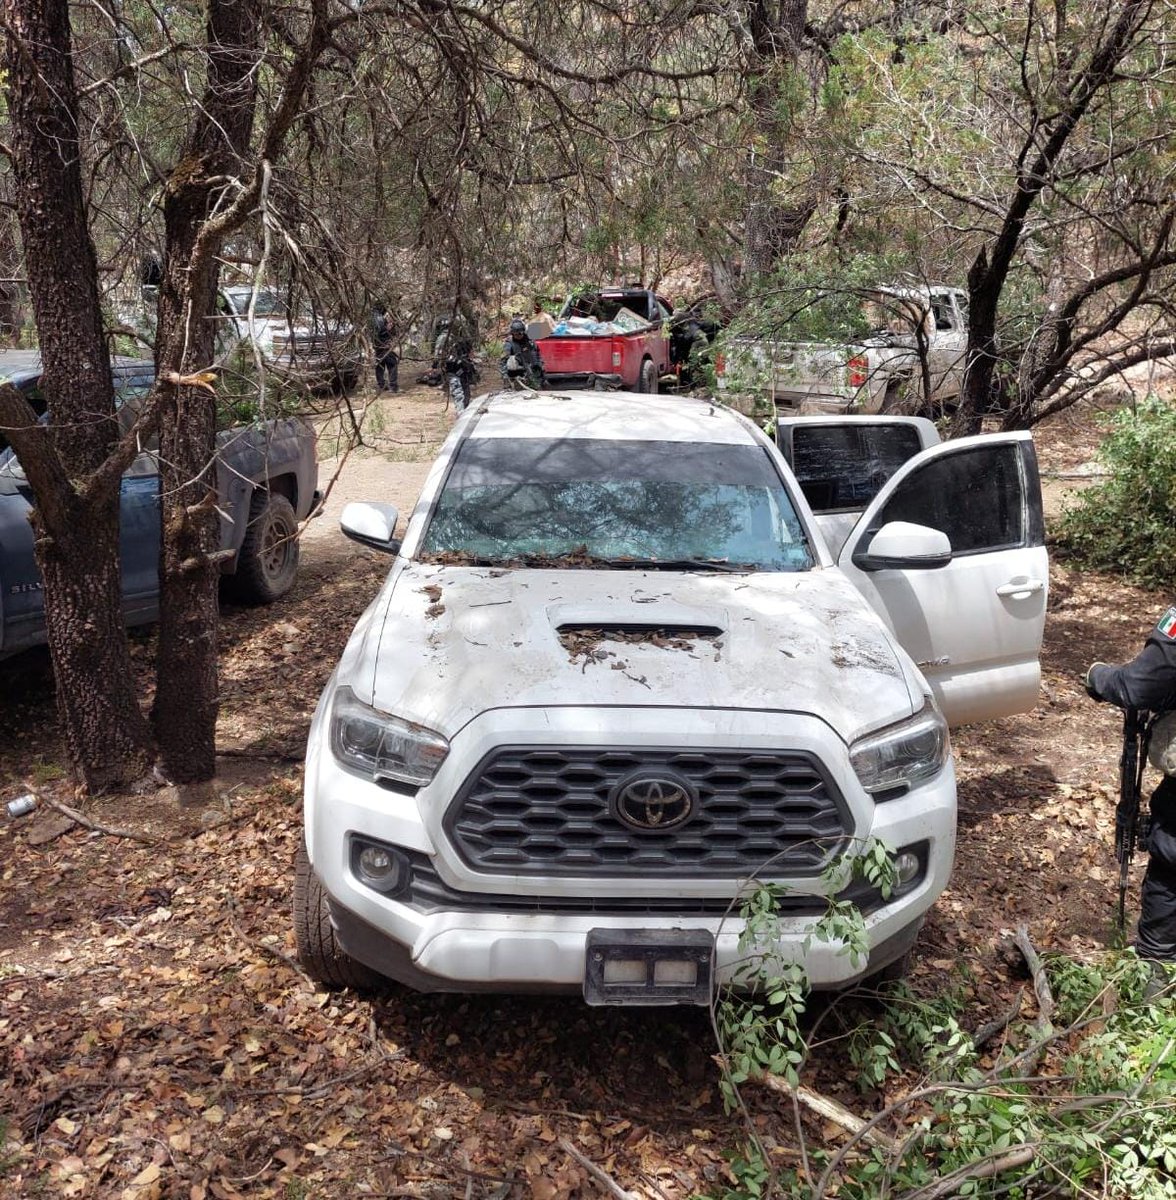 #LoDeHoy Elementos policiacos decomisaron explosivos, municiones y 11 vehículos que utilizaban criminales en el municipio de #GeneroCodina Zacatecas. Todo lo decomsiado fue localizado en dos campamentos ilcitios en la comunidad #RioFrio